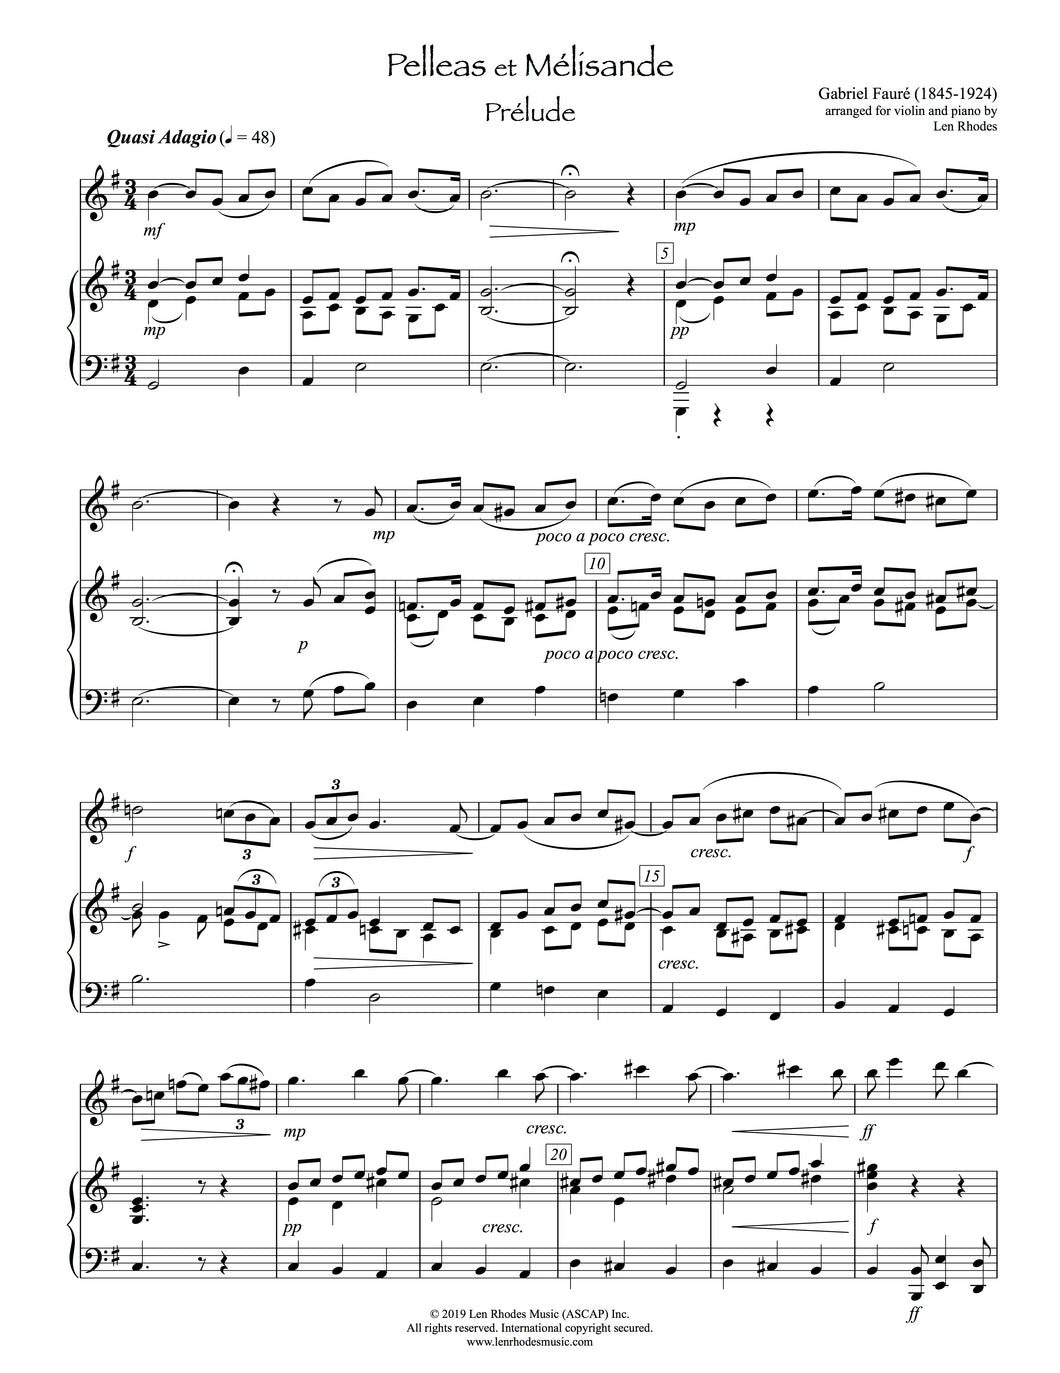 Pelleas et Mélisande, Fauré - Violin and Piano